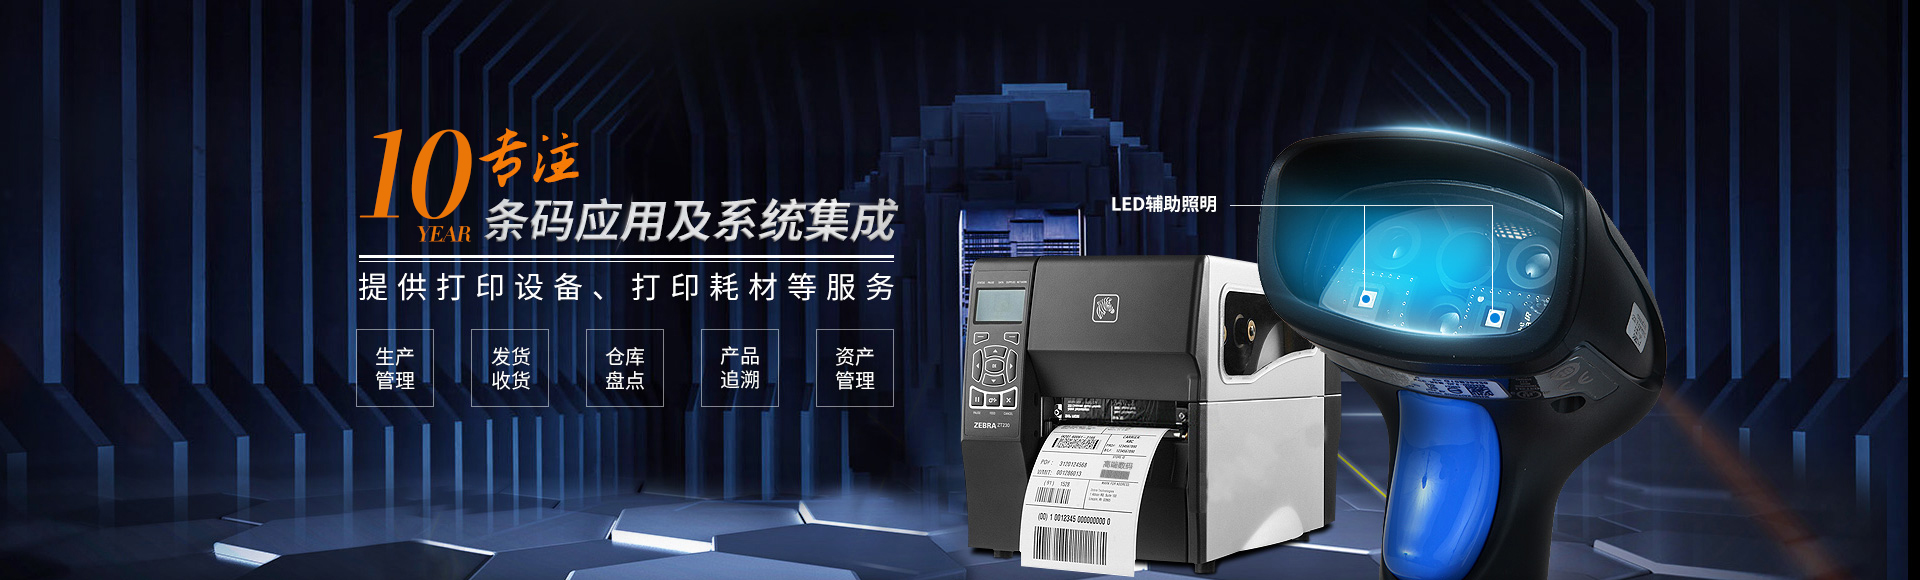 广州市领域条码设备教您如何保养斑马打印机的打印头